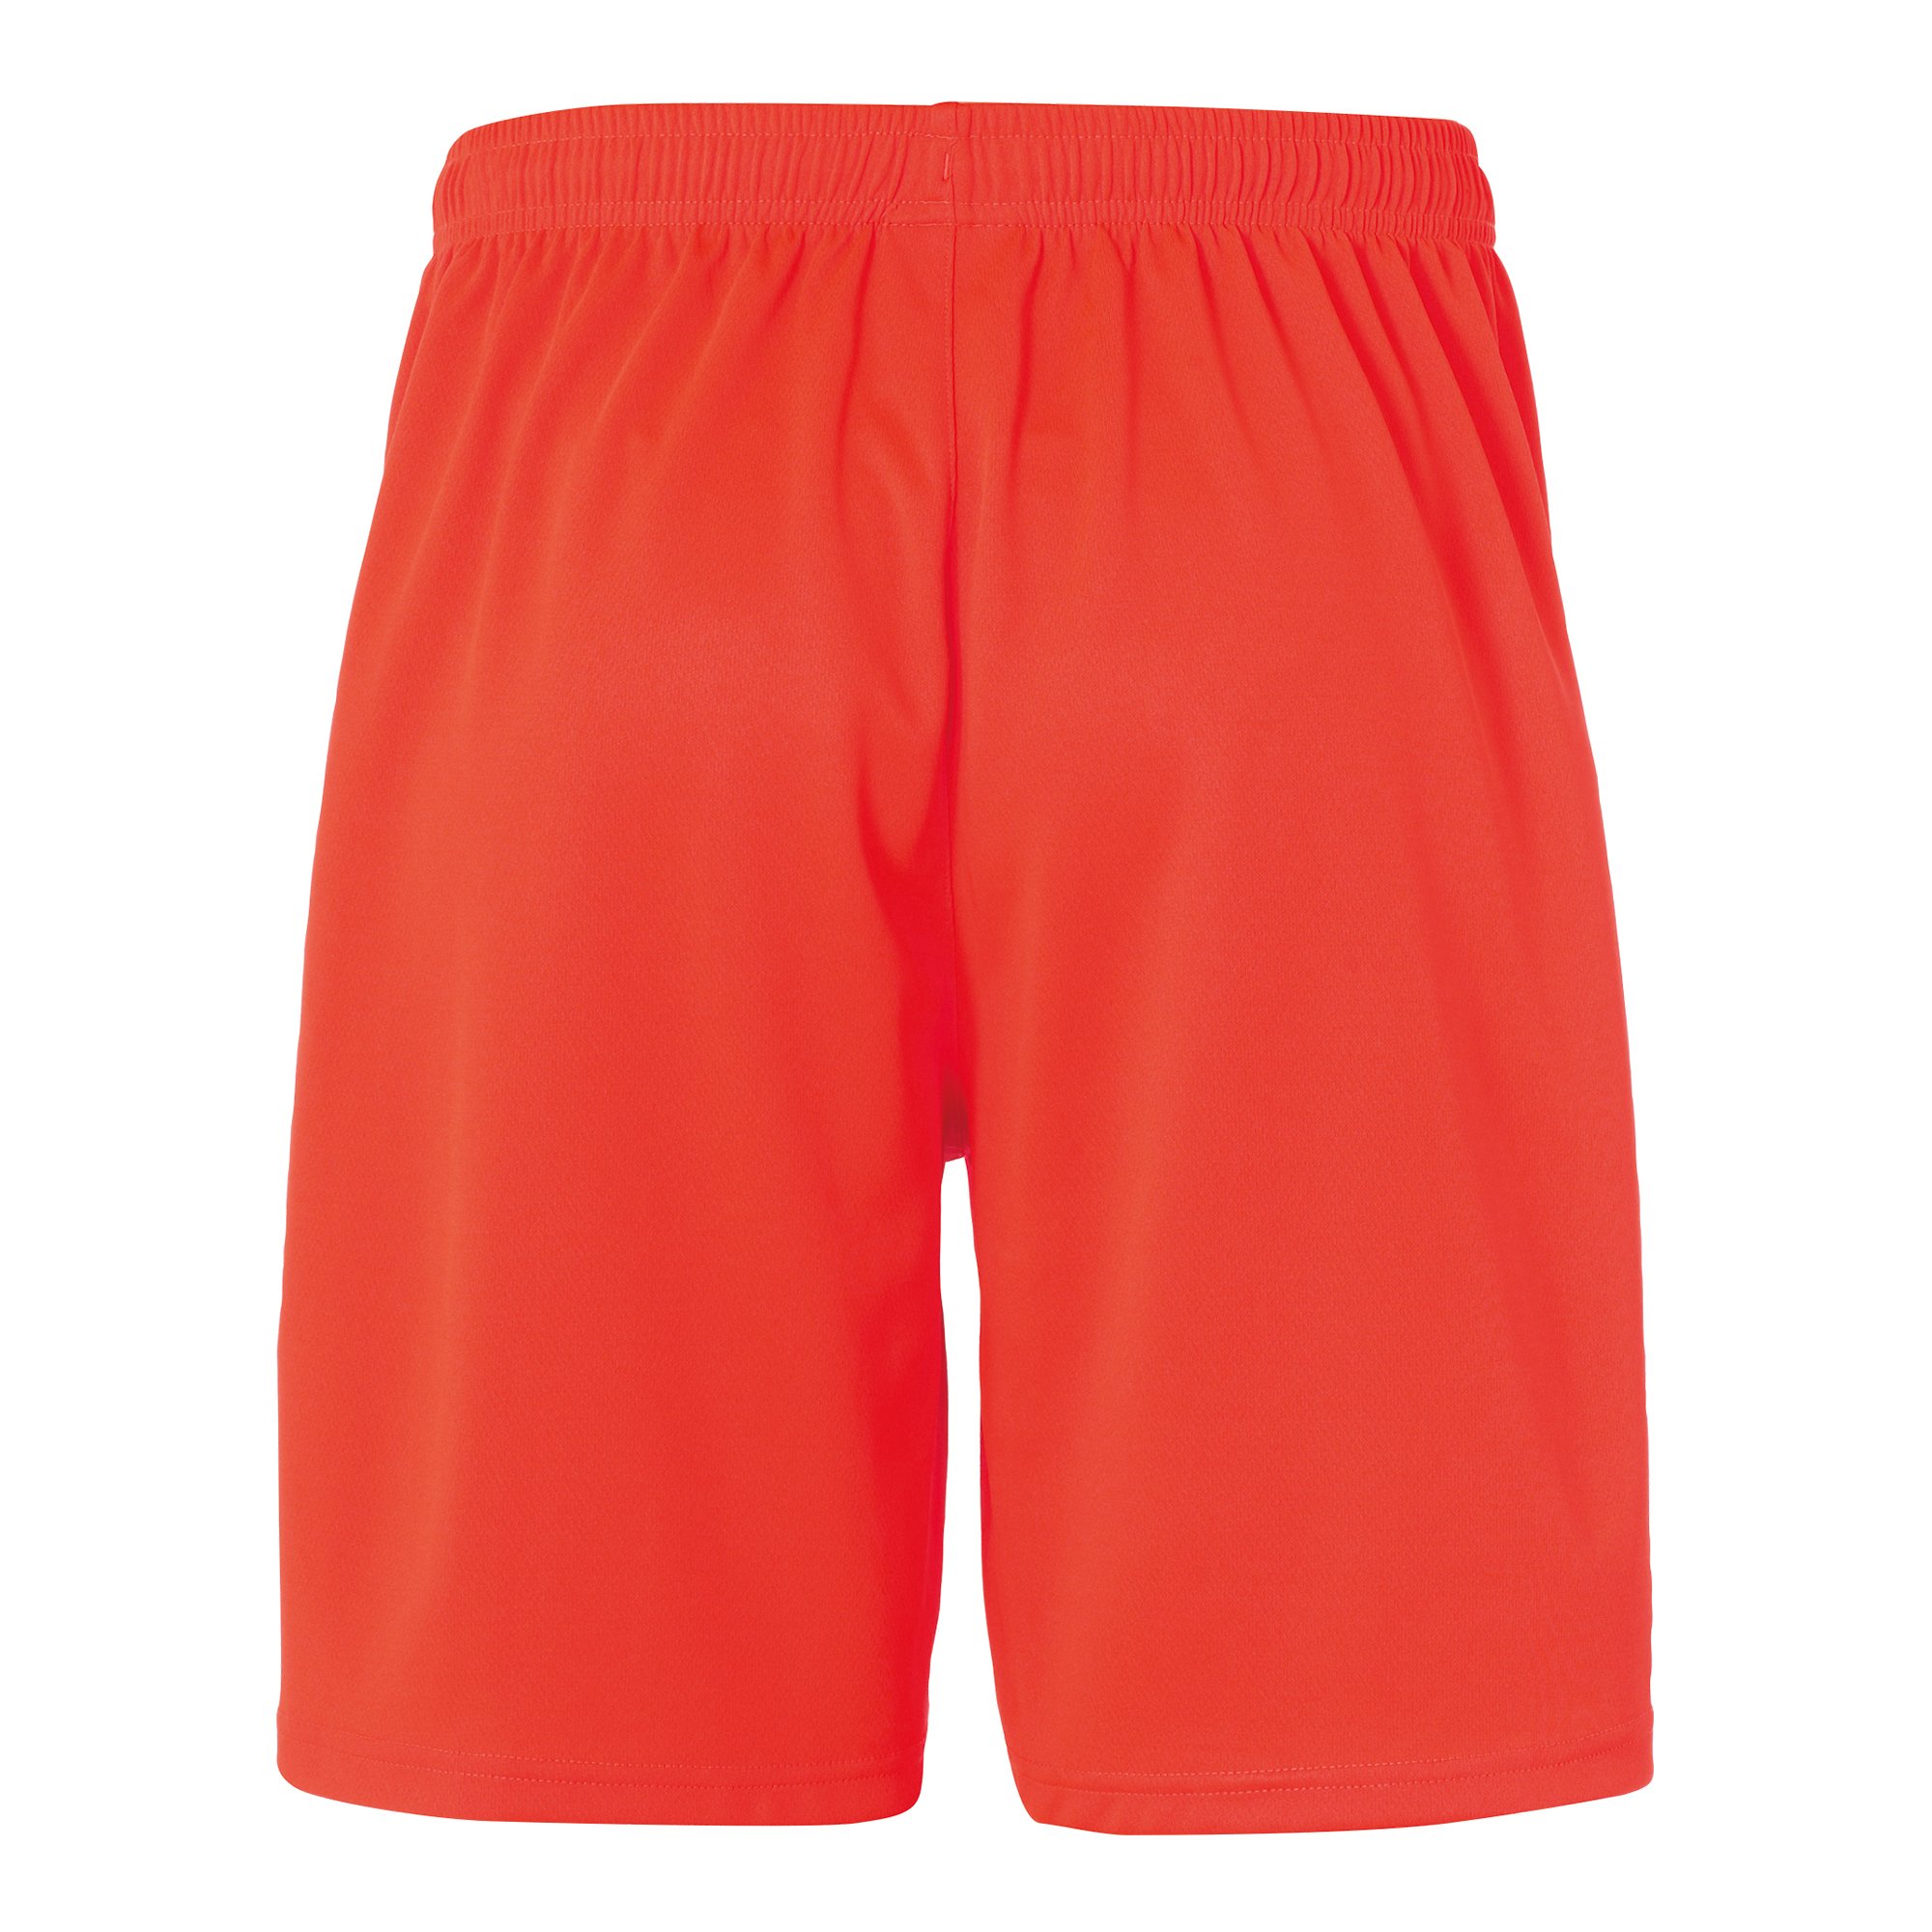 Uhlsport Center Basic Shorts